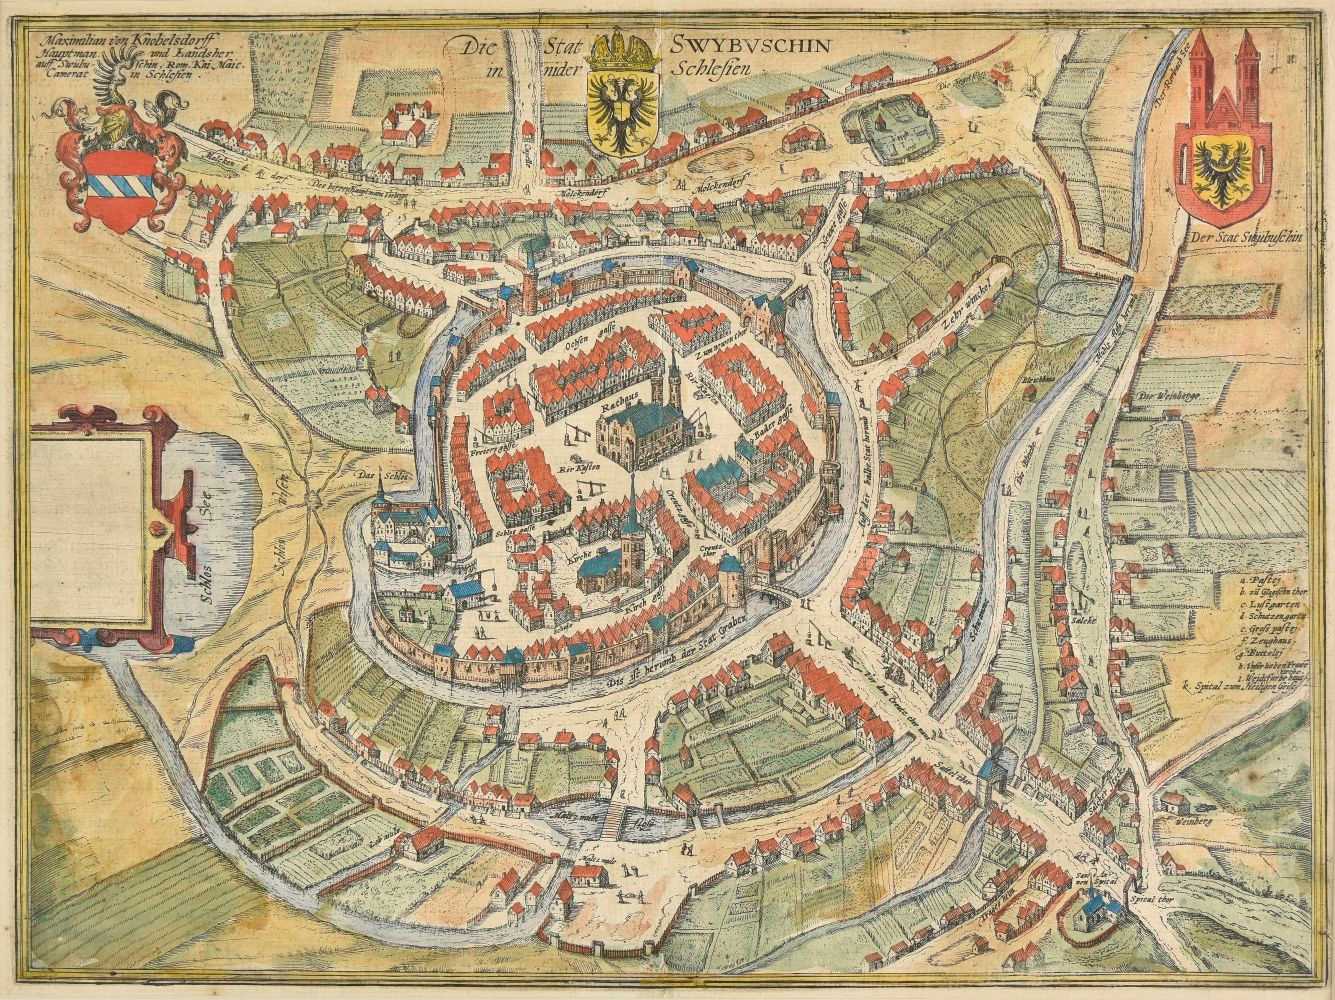 Lot 95 - Poland. (Braun Georg & Hogenberg Franz), Die Stat Swybuschin, circa 1580